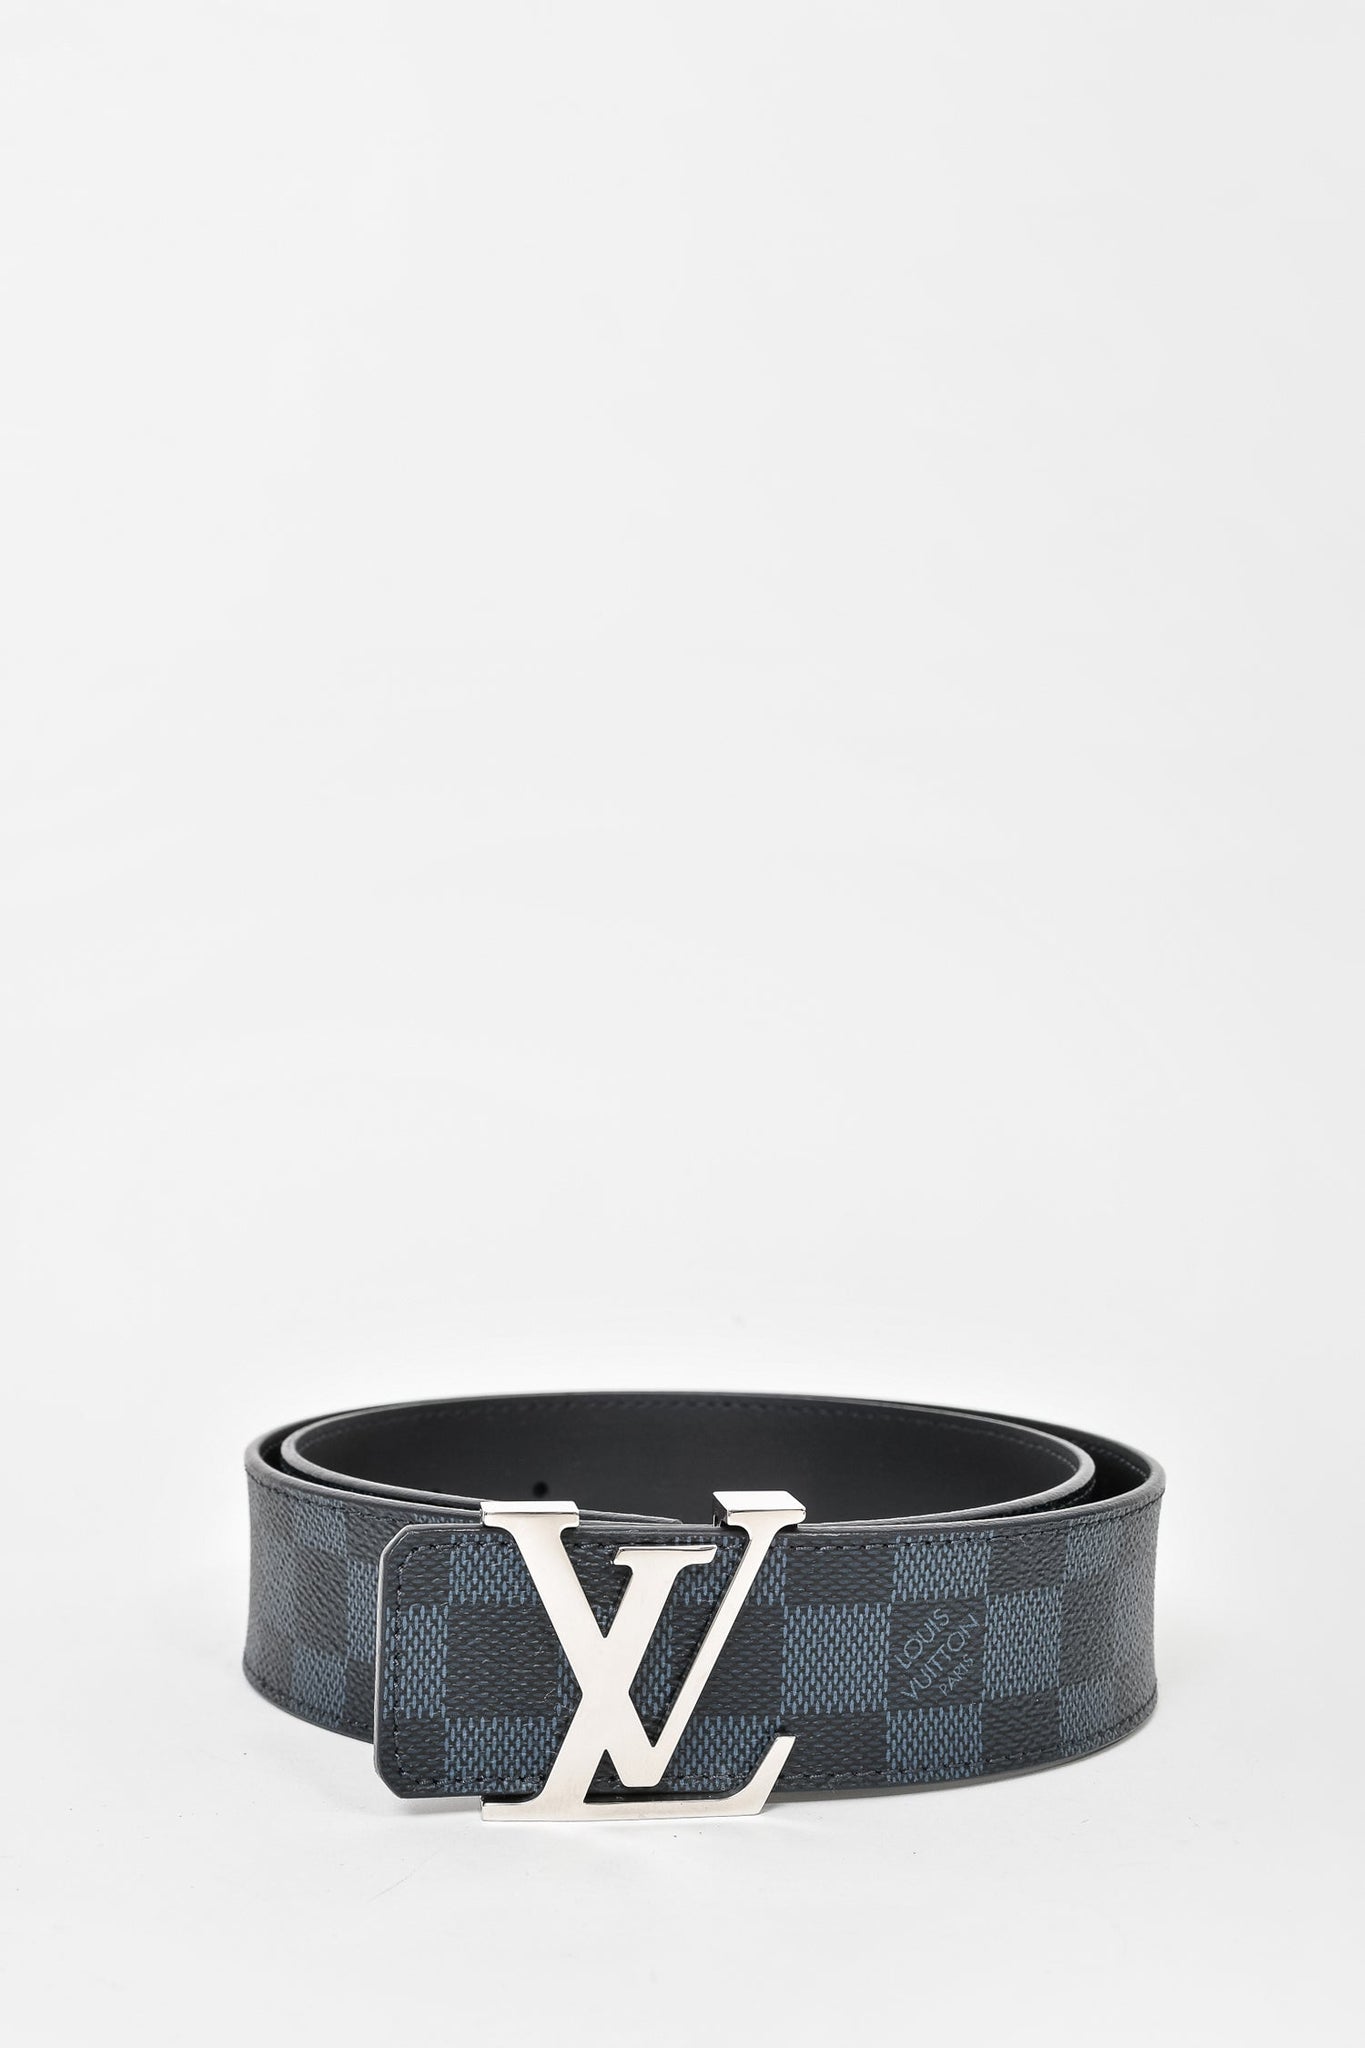 Louis Vuitton Louis Vuitton Damier Graphite Reversible Belt Size 85